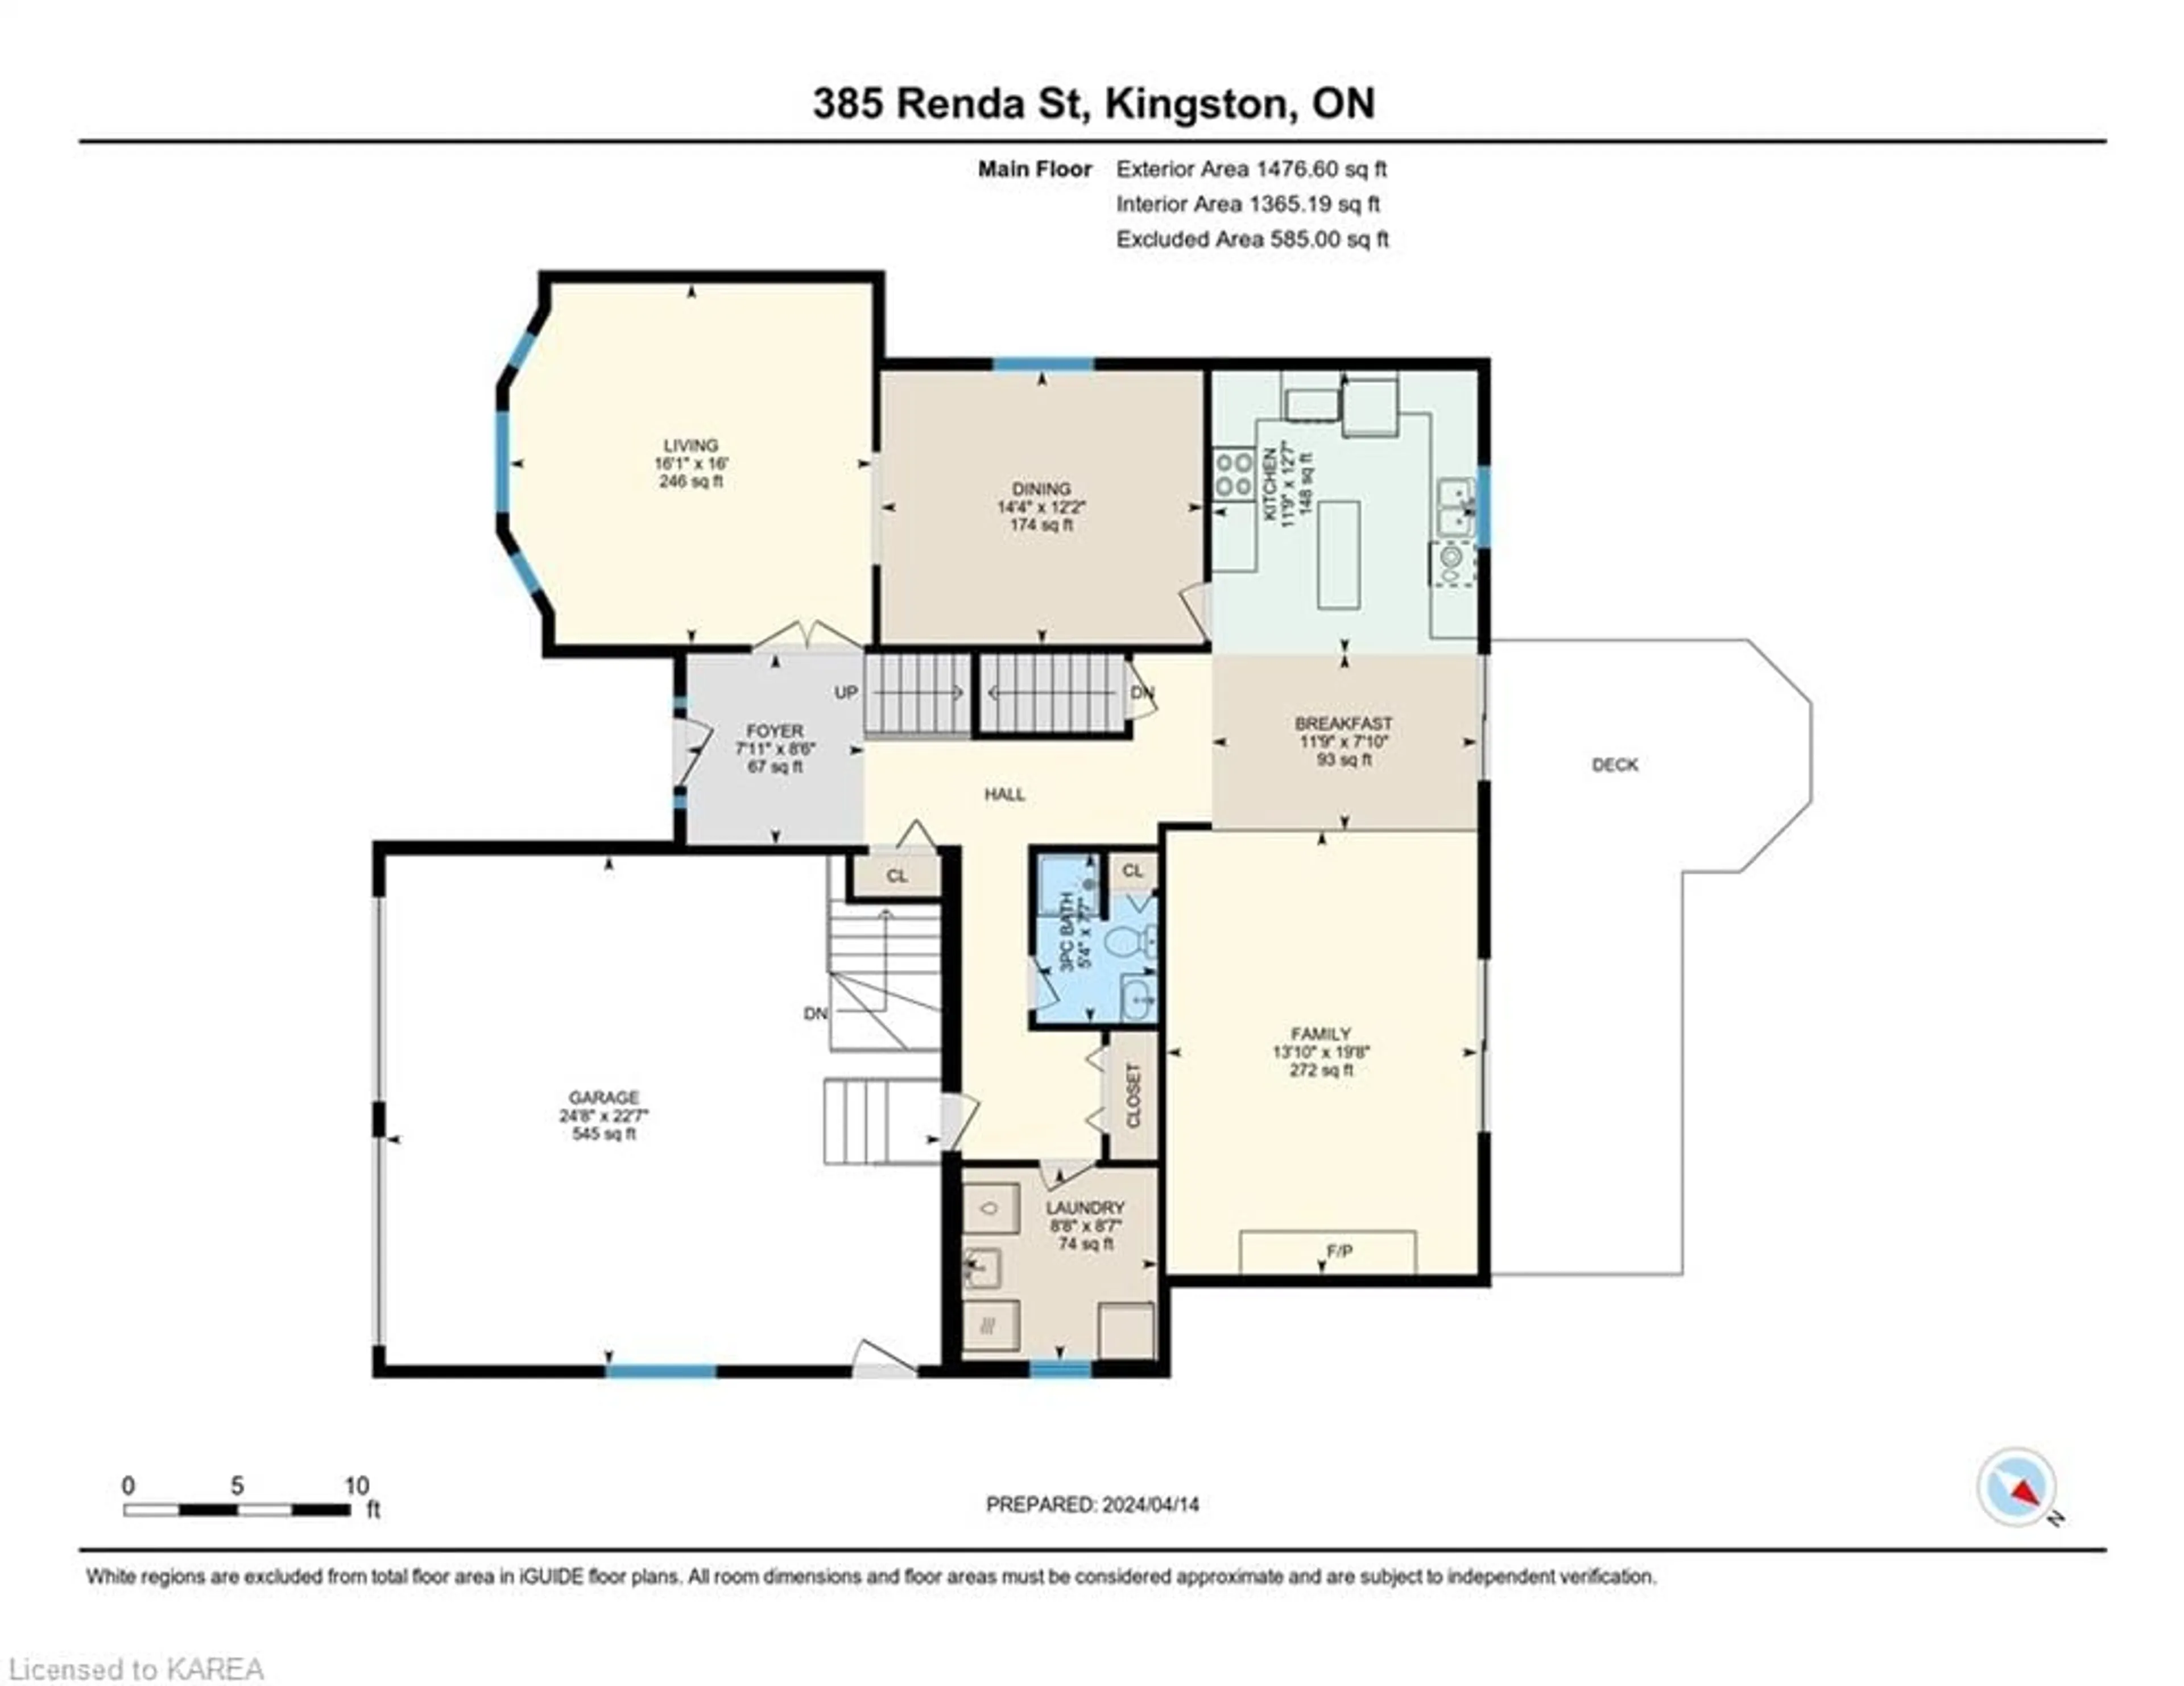 Floor plan for 385 Renda St, Kingston Ontario K7M 5X9